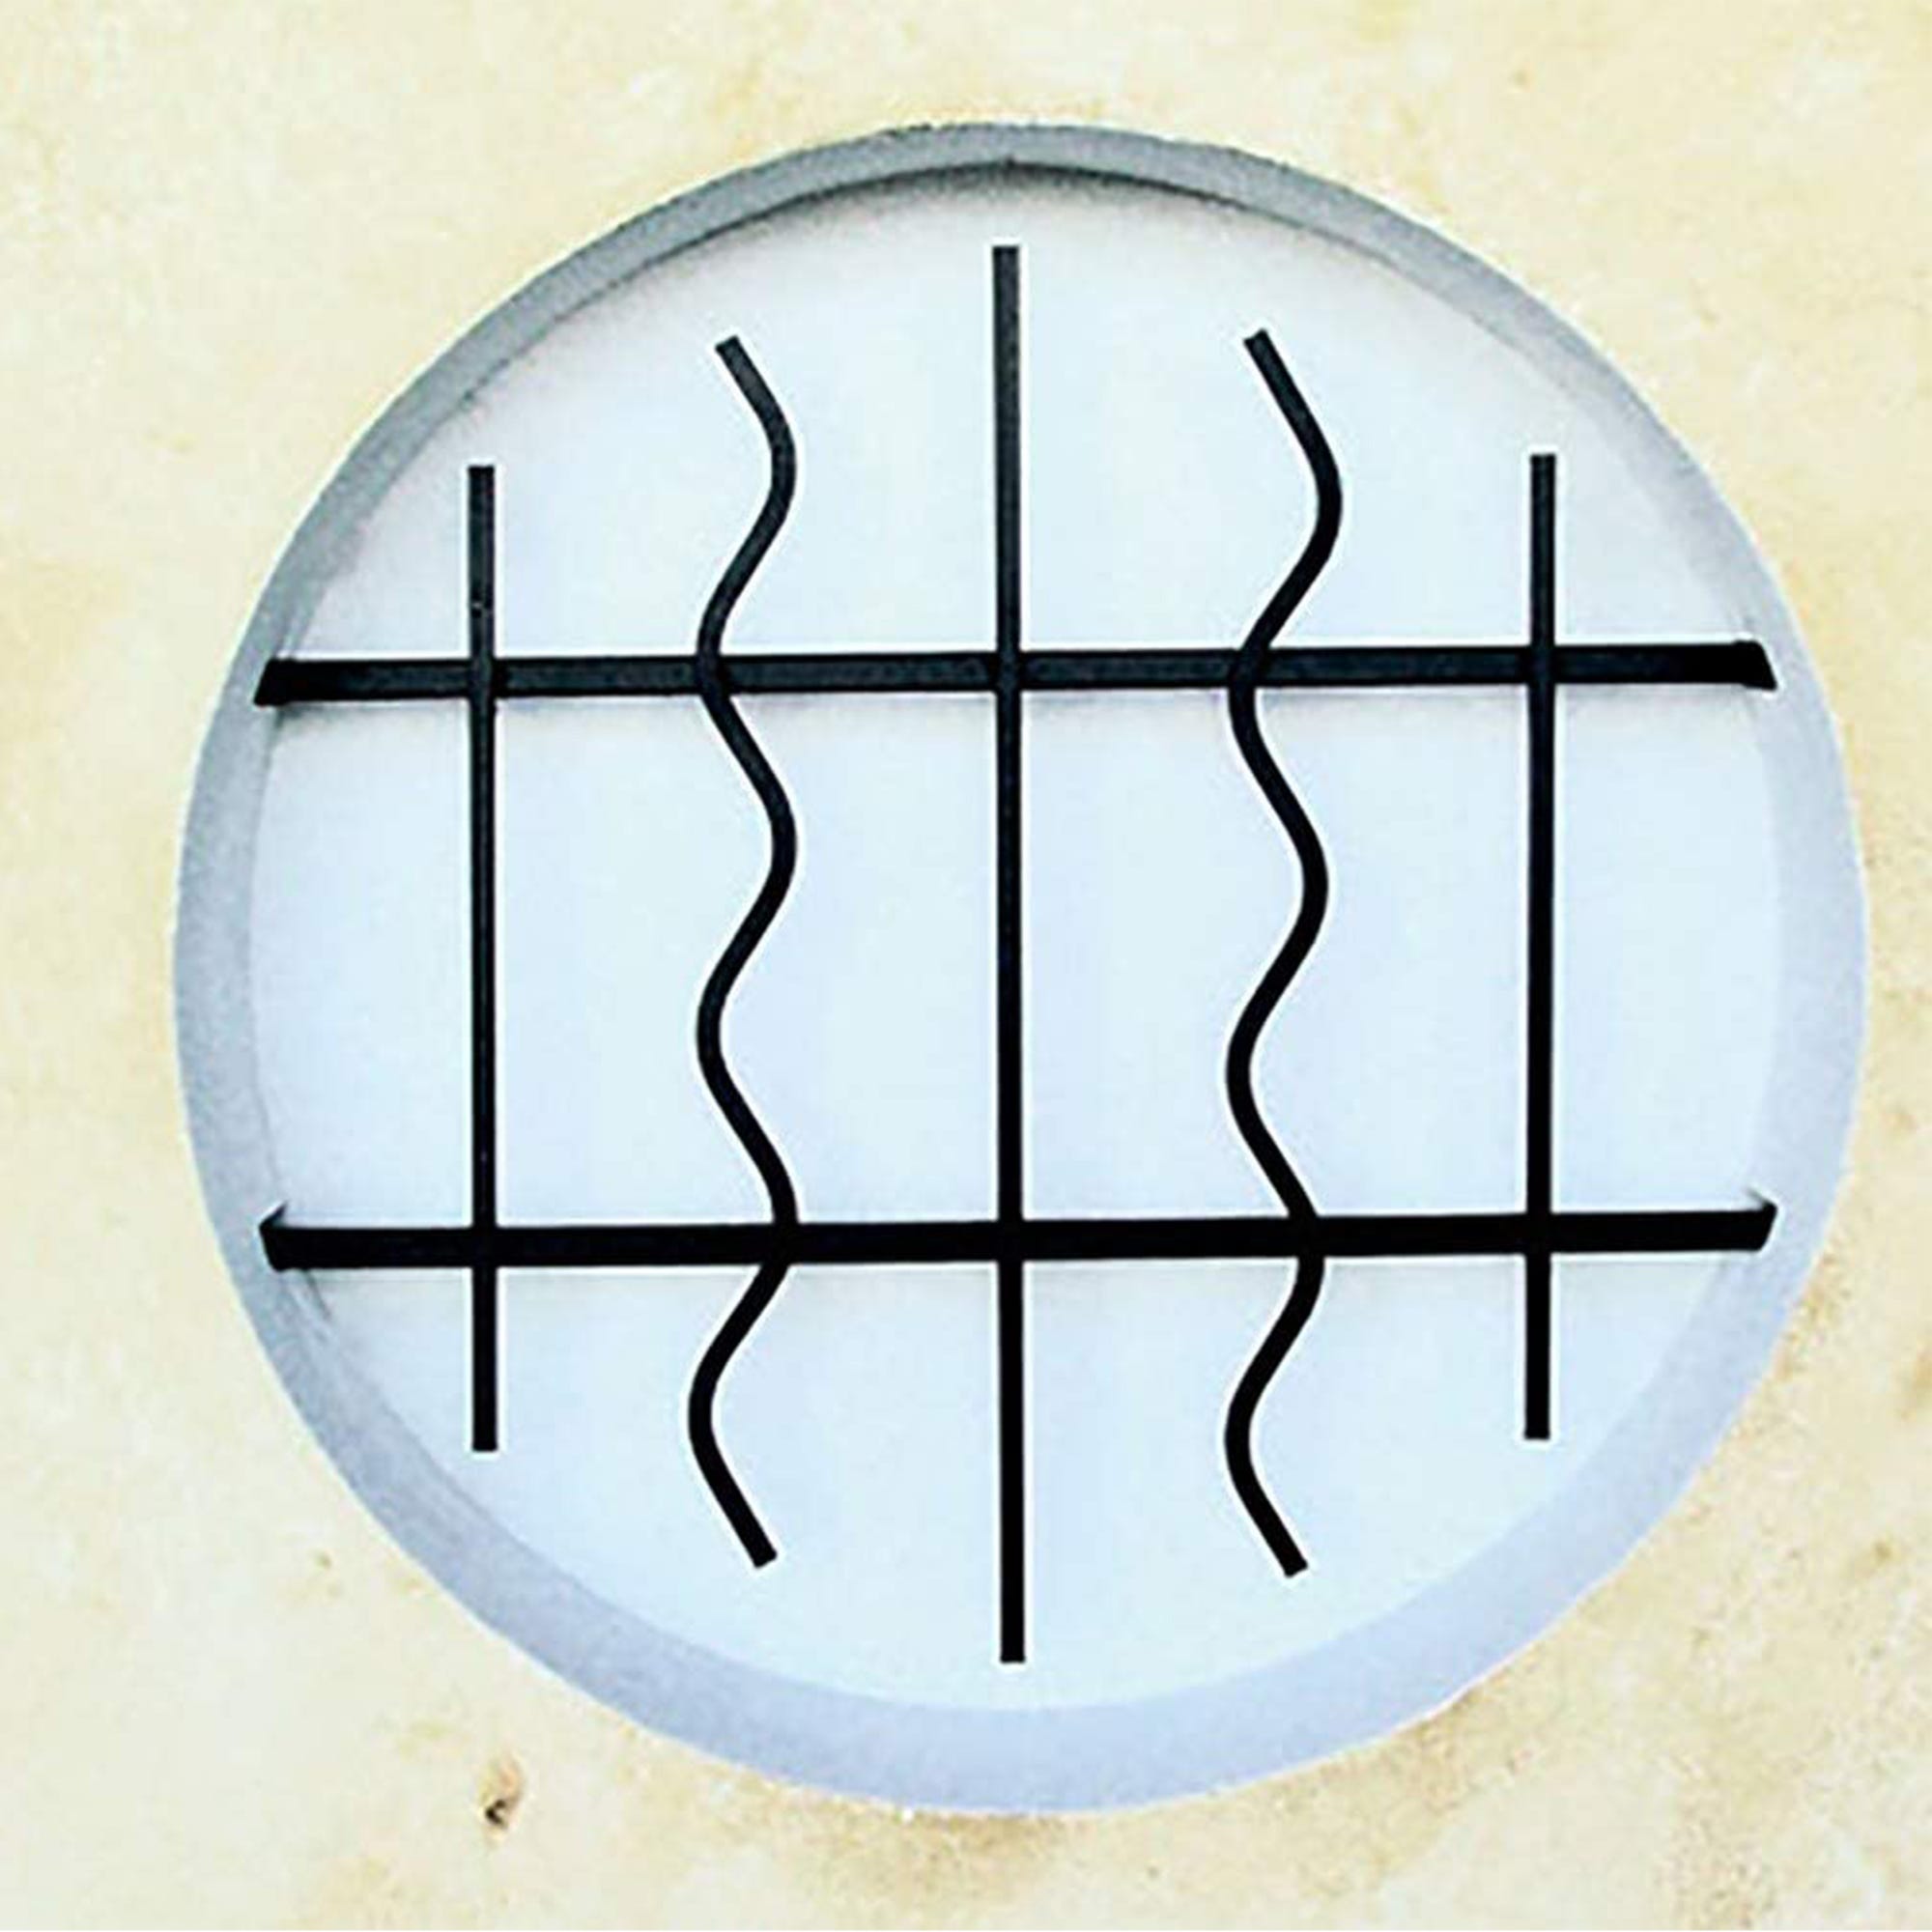 Grille de Defense Azur diametre 70 cm pour Fenetre ronde (côte tableau) 2